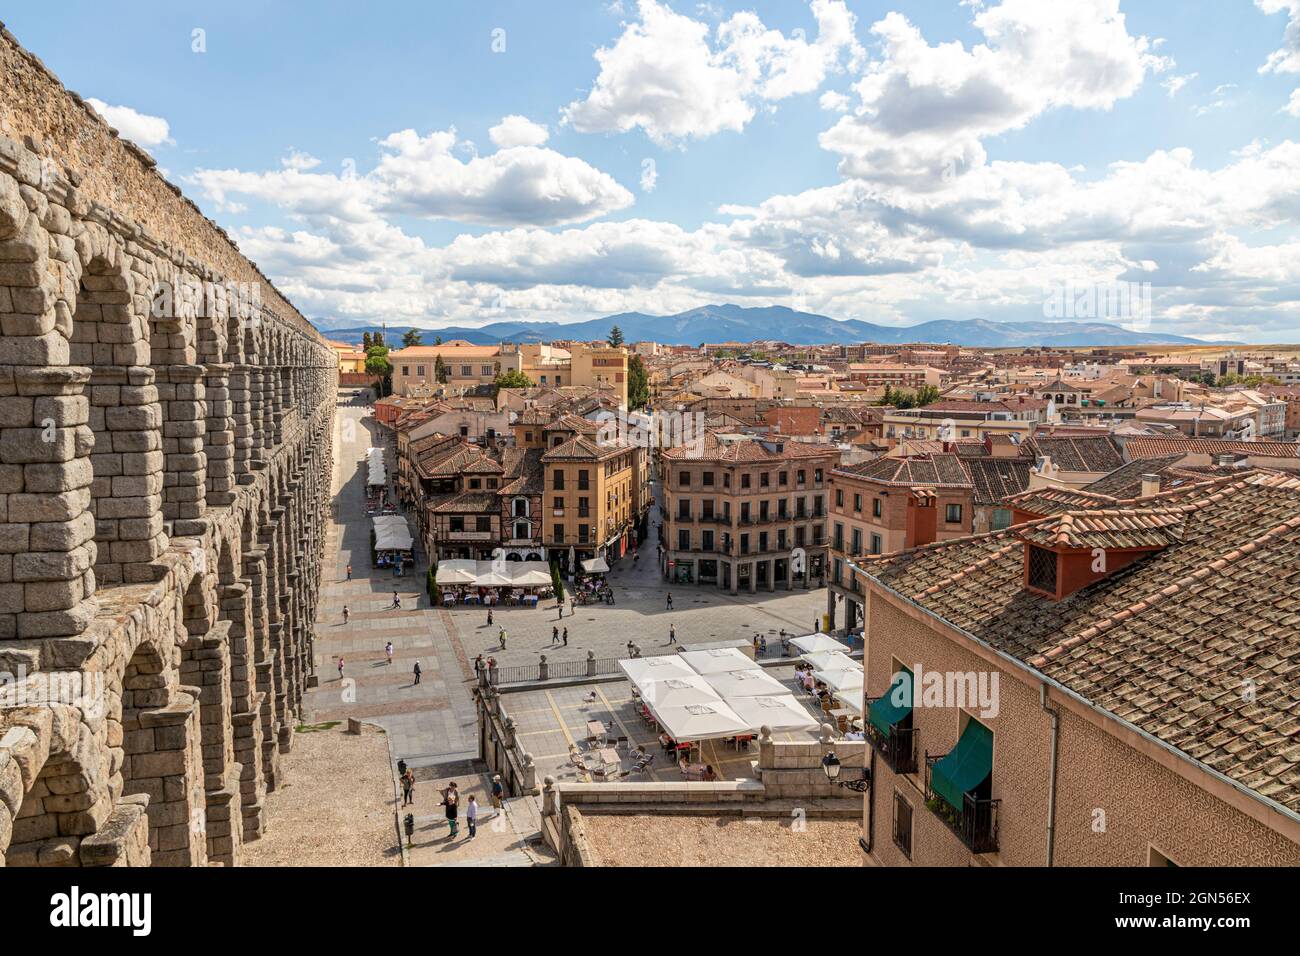 Segovia, Spanien. Blick auf die Altstadt und das Acueducto de Segovia, ein römisches Aquädukt oder eine Wasserbrücke, die im 1. Jahrhundert n. Chr. erbaut wurde Stockfoto